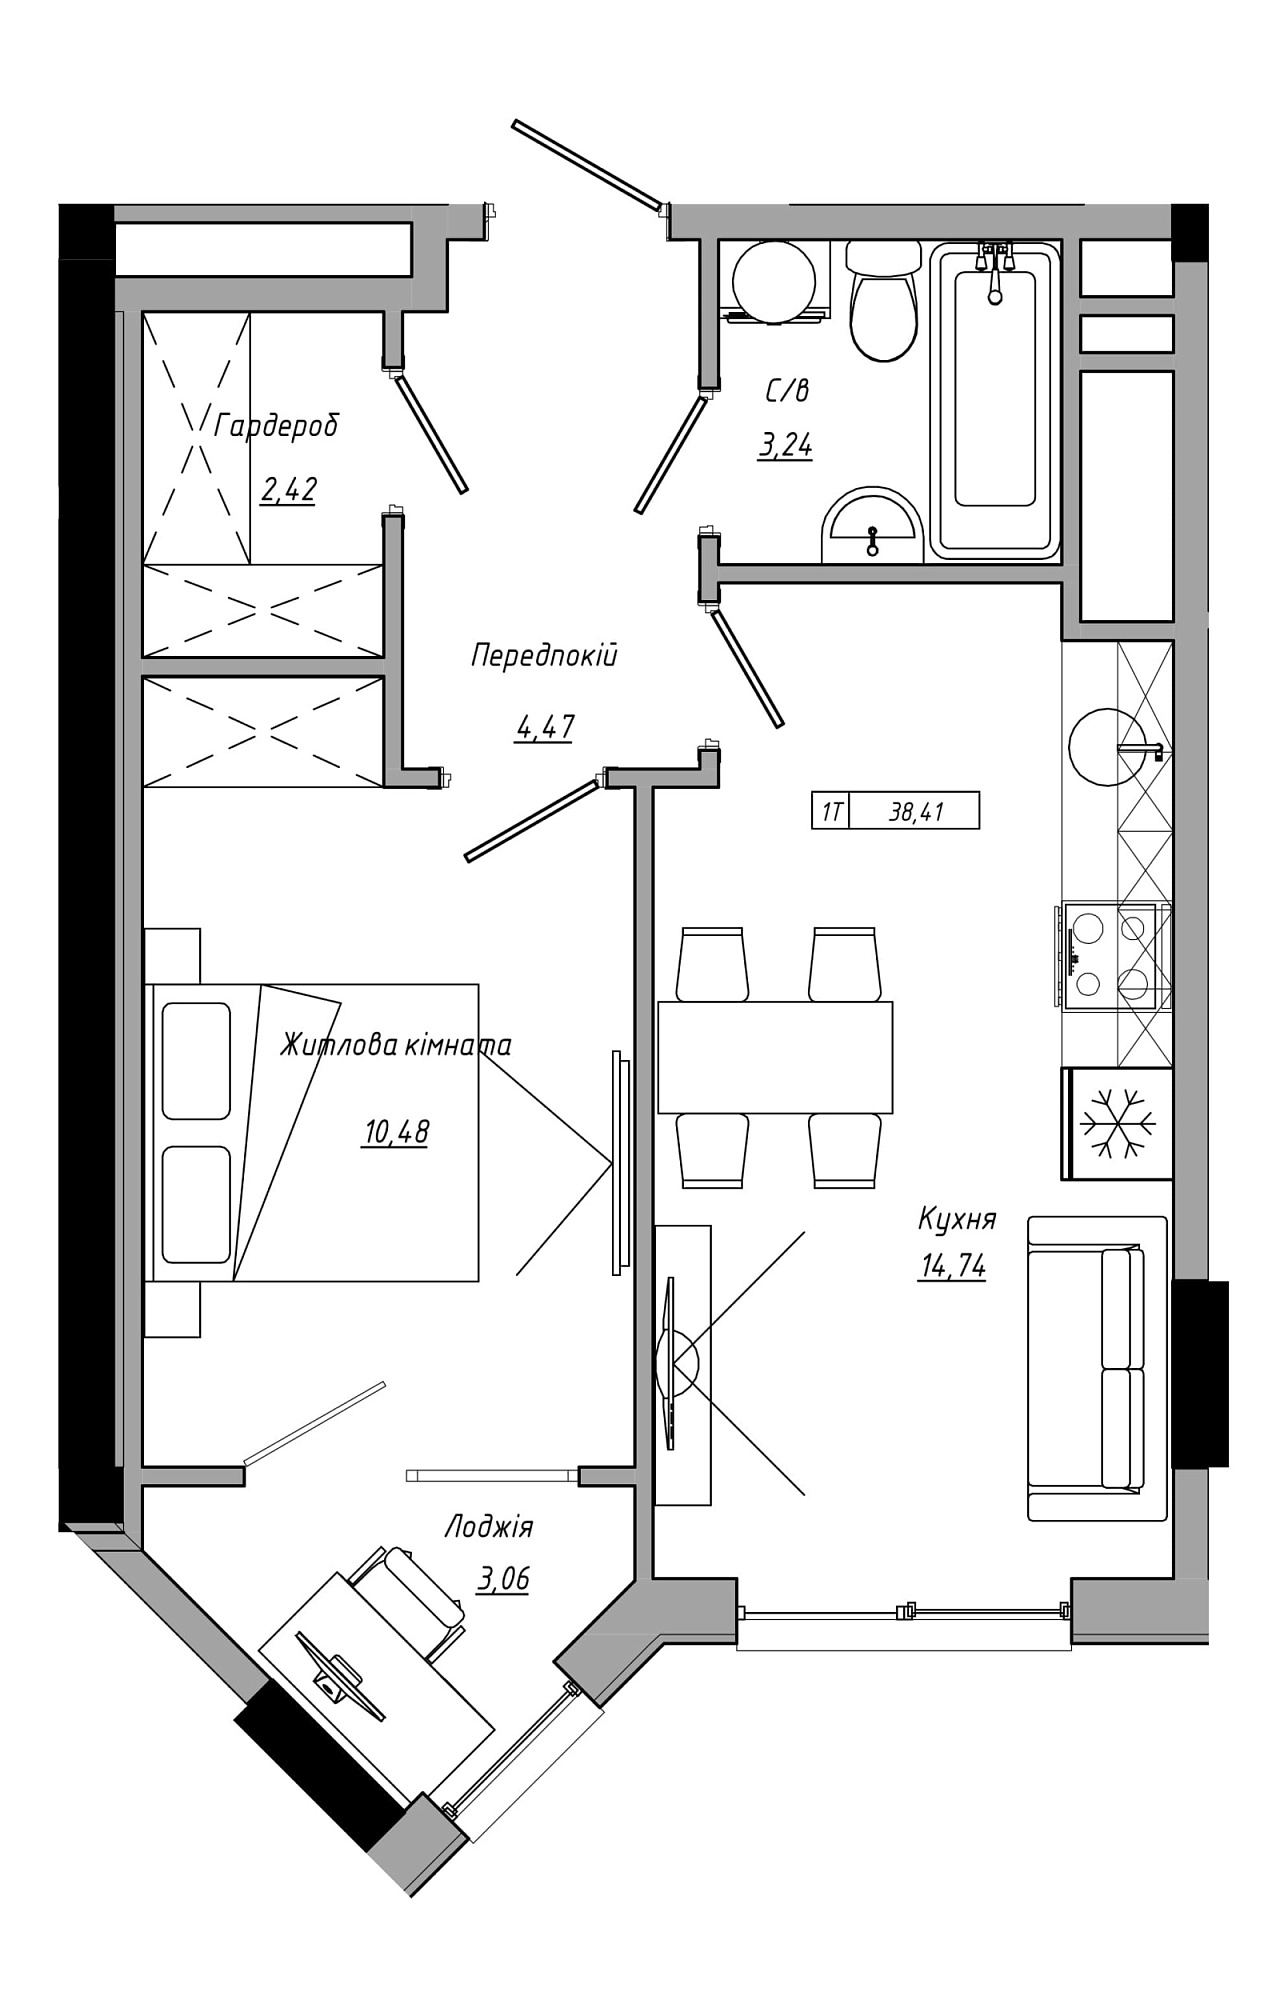 Планировка 1-к квартира площей 38.41м2, AB-21-09/00022.